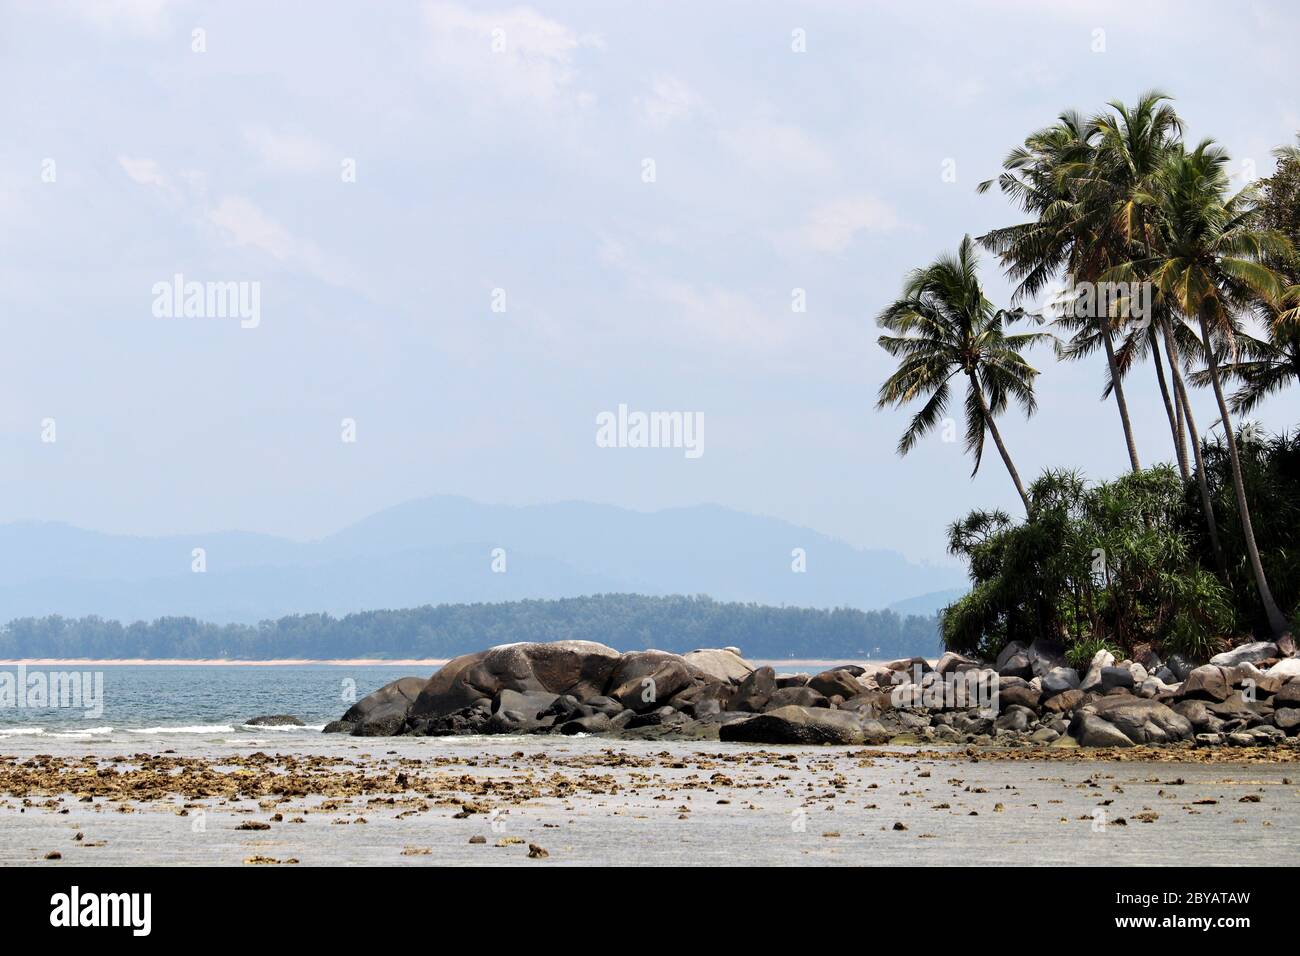 Île tropicale avec palmiers à noix de coco dans un océan, plage avec rochers, vue pittoresque sur les montagnes dans le brouillard. Concept de vacances sur la nature paradisiaque Banque D'Images